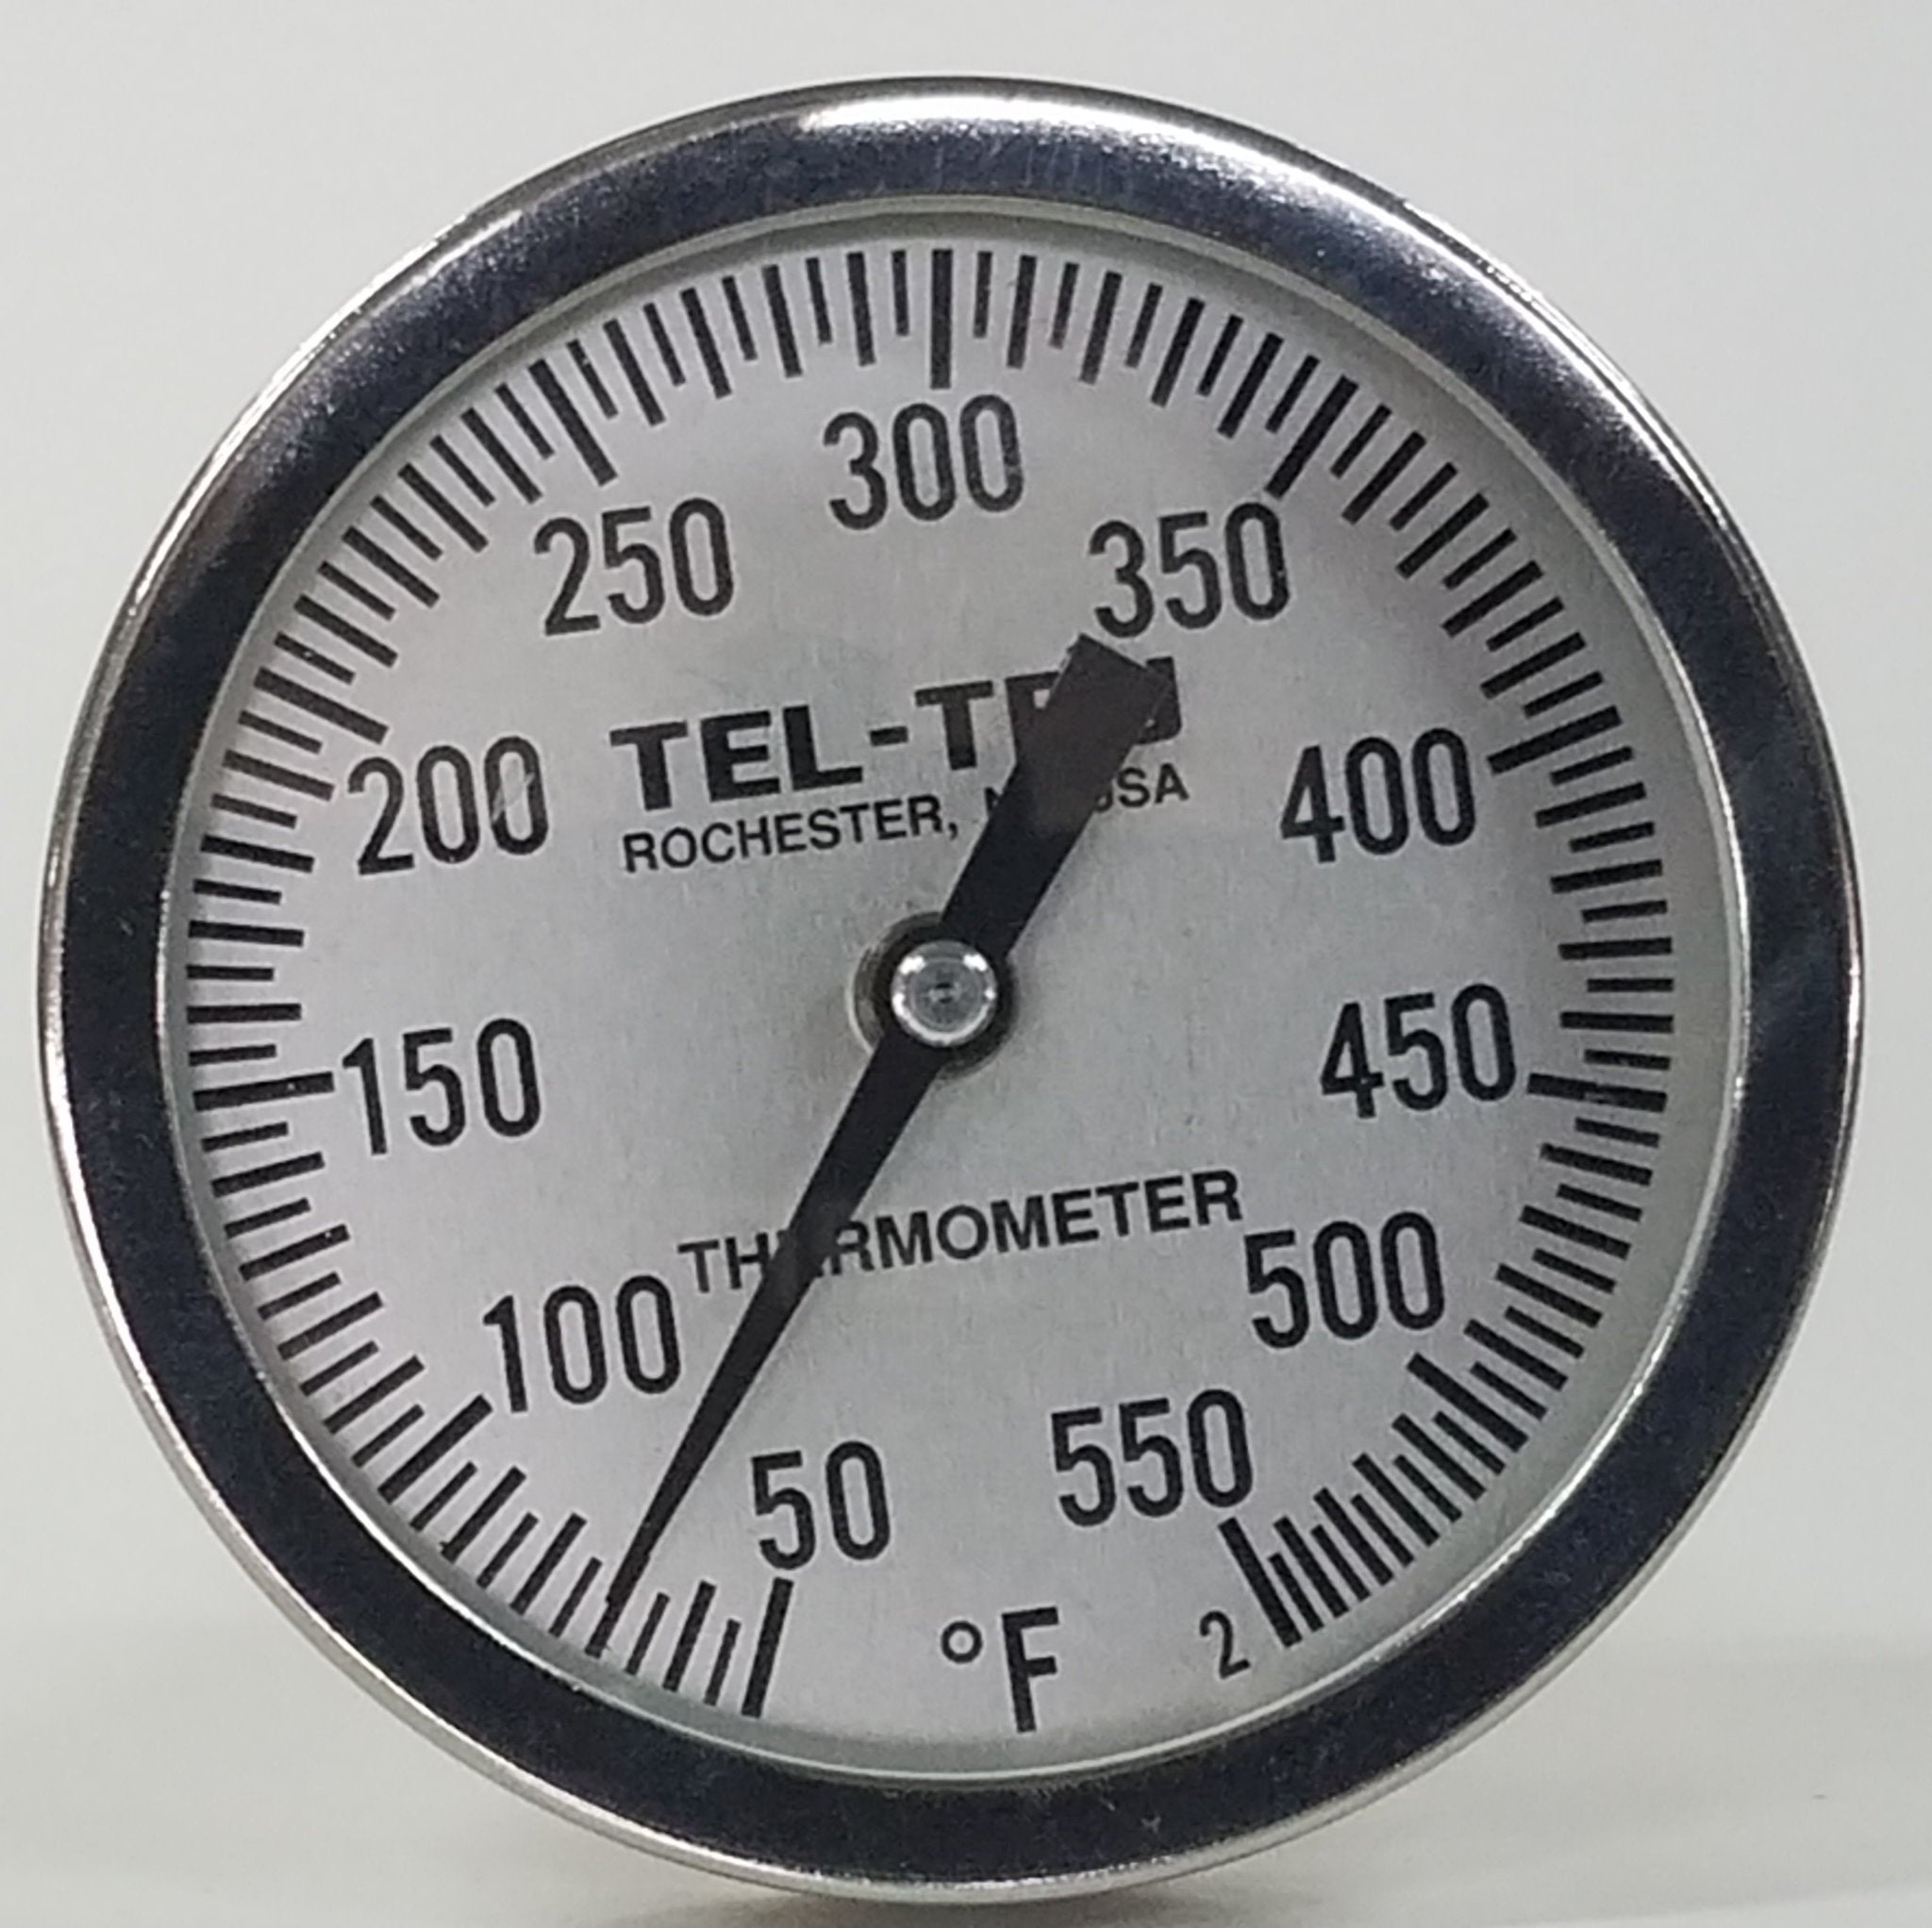 Tel-Tru BQ500R BBQ Grill & Smoker Thermometer 5 Dial 2.5 Stem 50